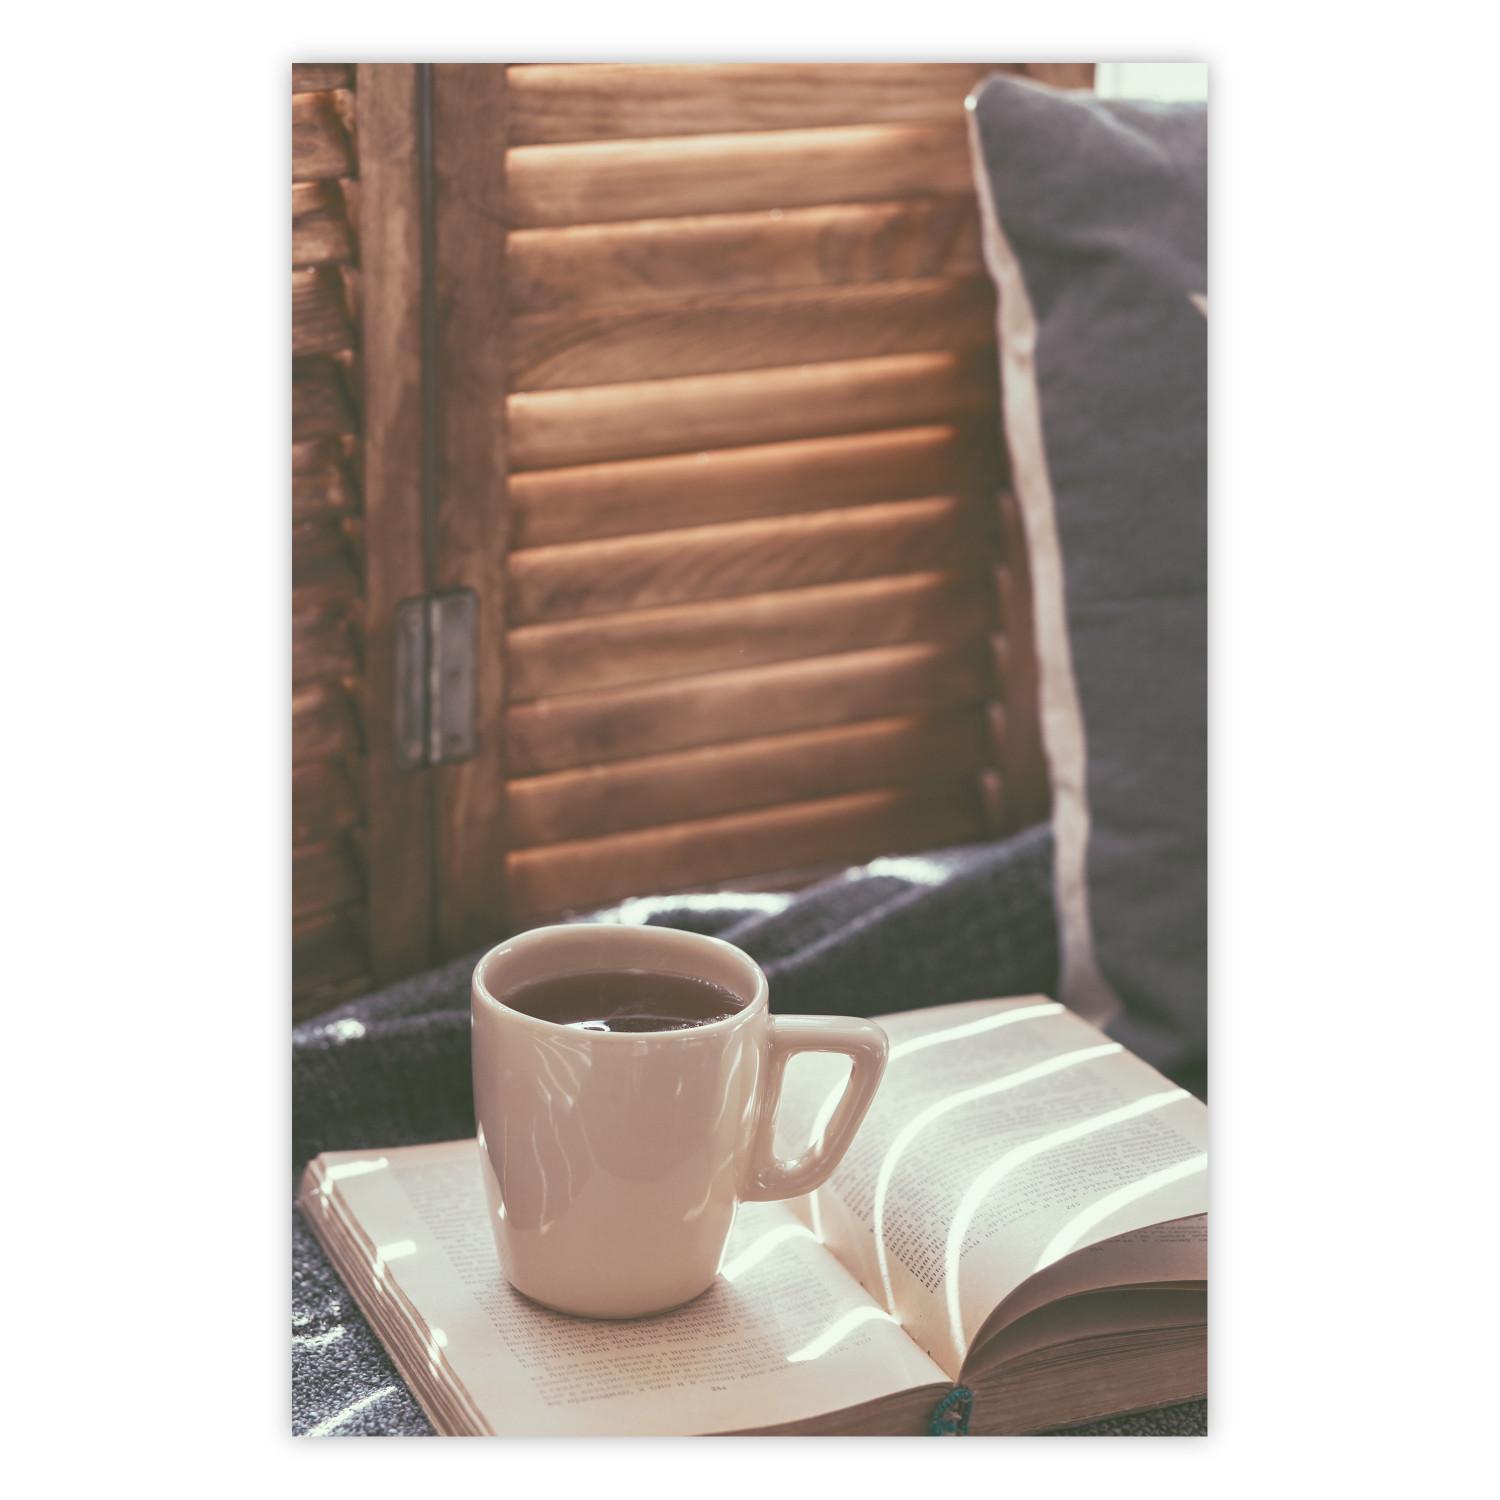 Poster Mug of Memories - open book with tea against wooden doors